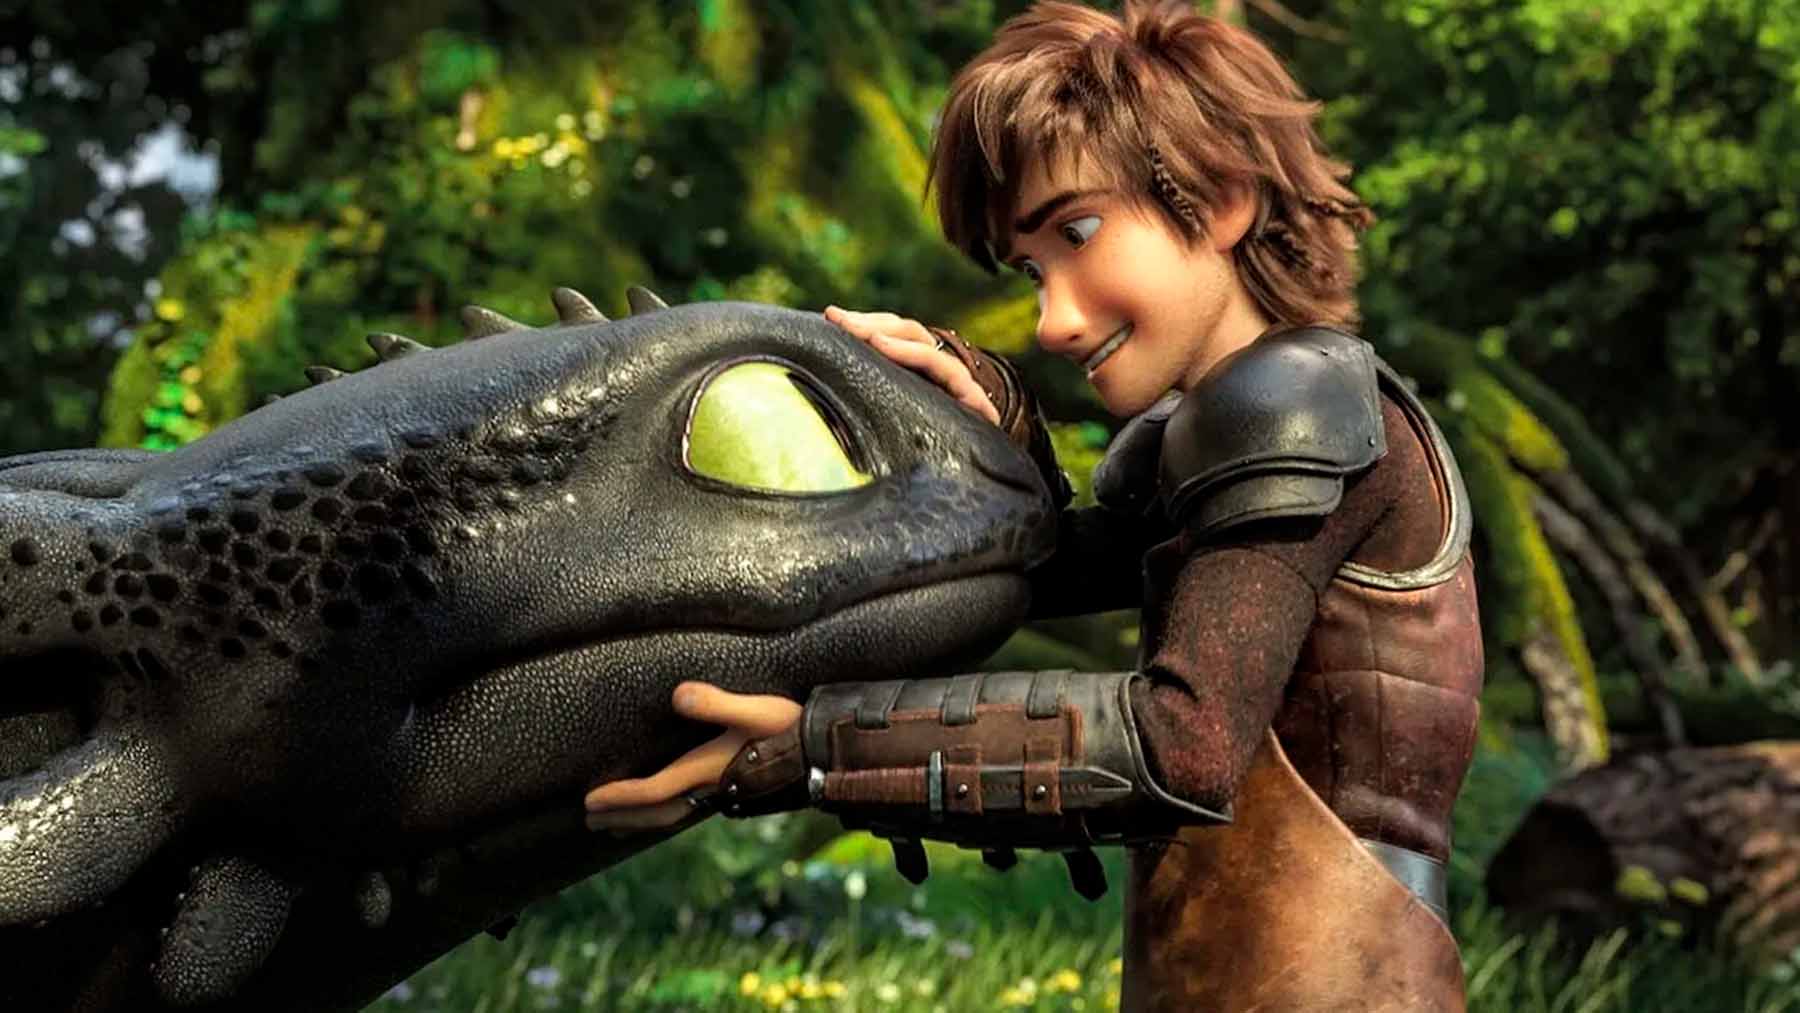 Cómo entrenar tu dragón: del cine al streaming